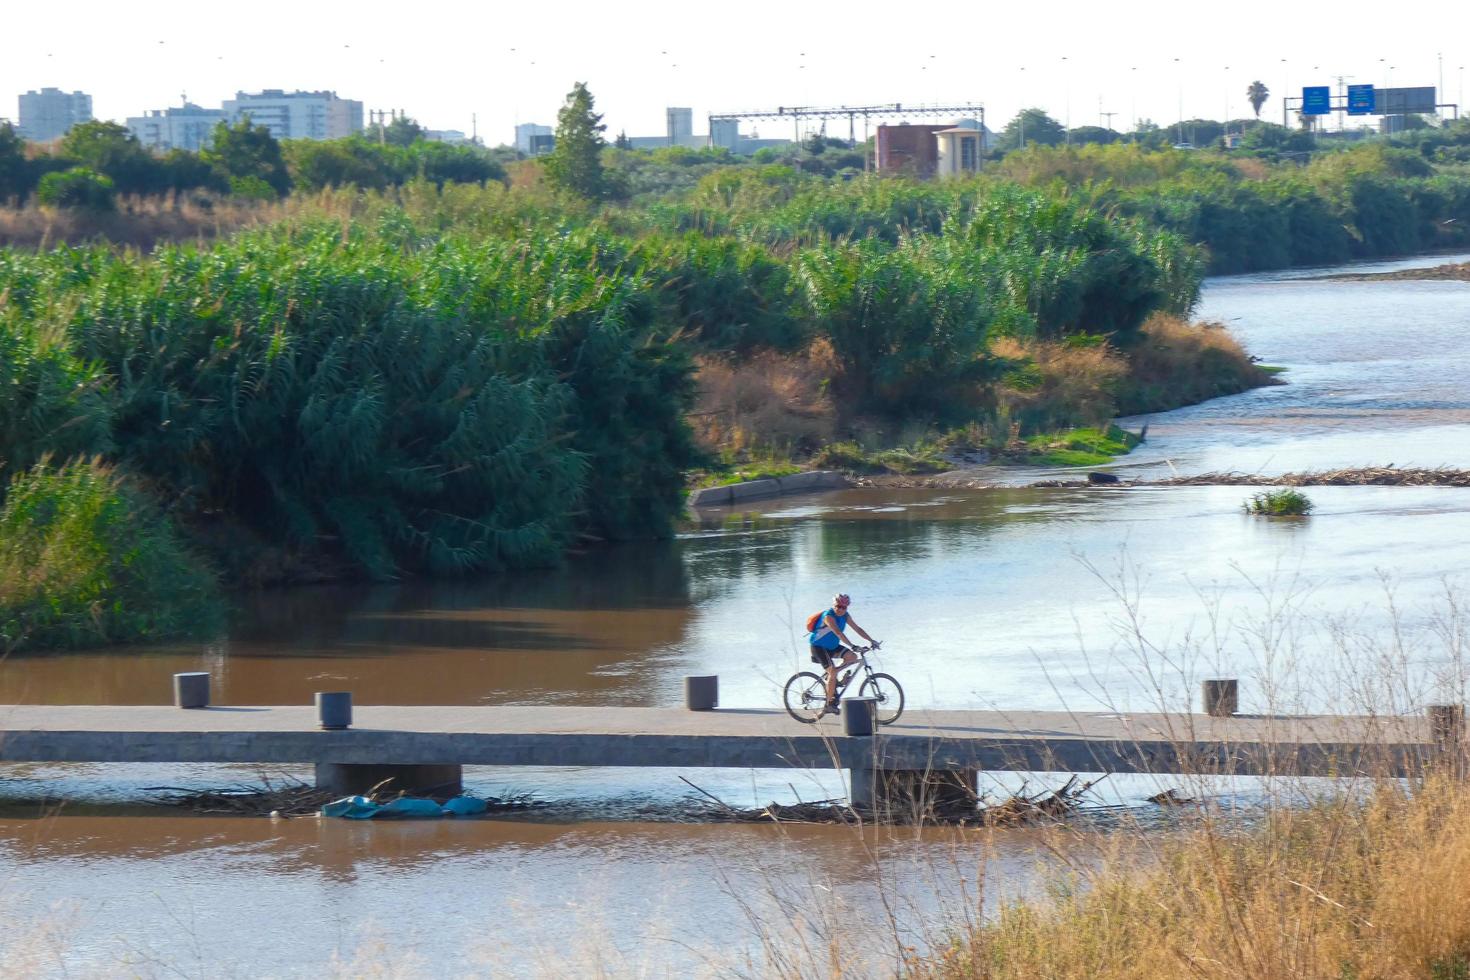 puente de inundación para cruzar el río para deportistas, tanto en bicicleta como a pie y corriendo. foto